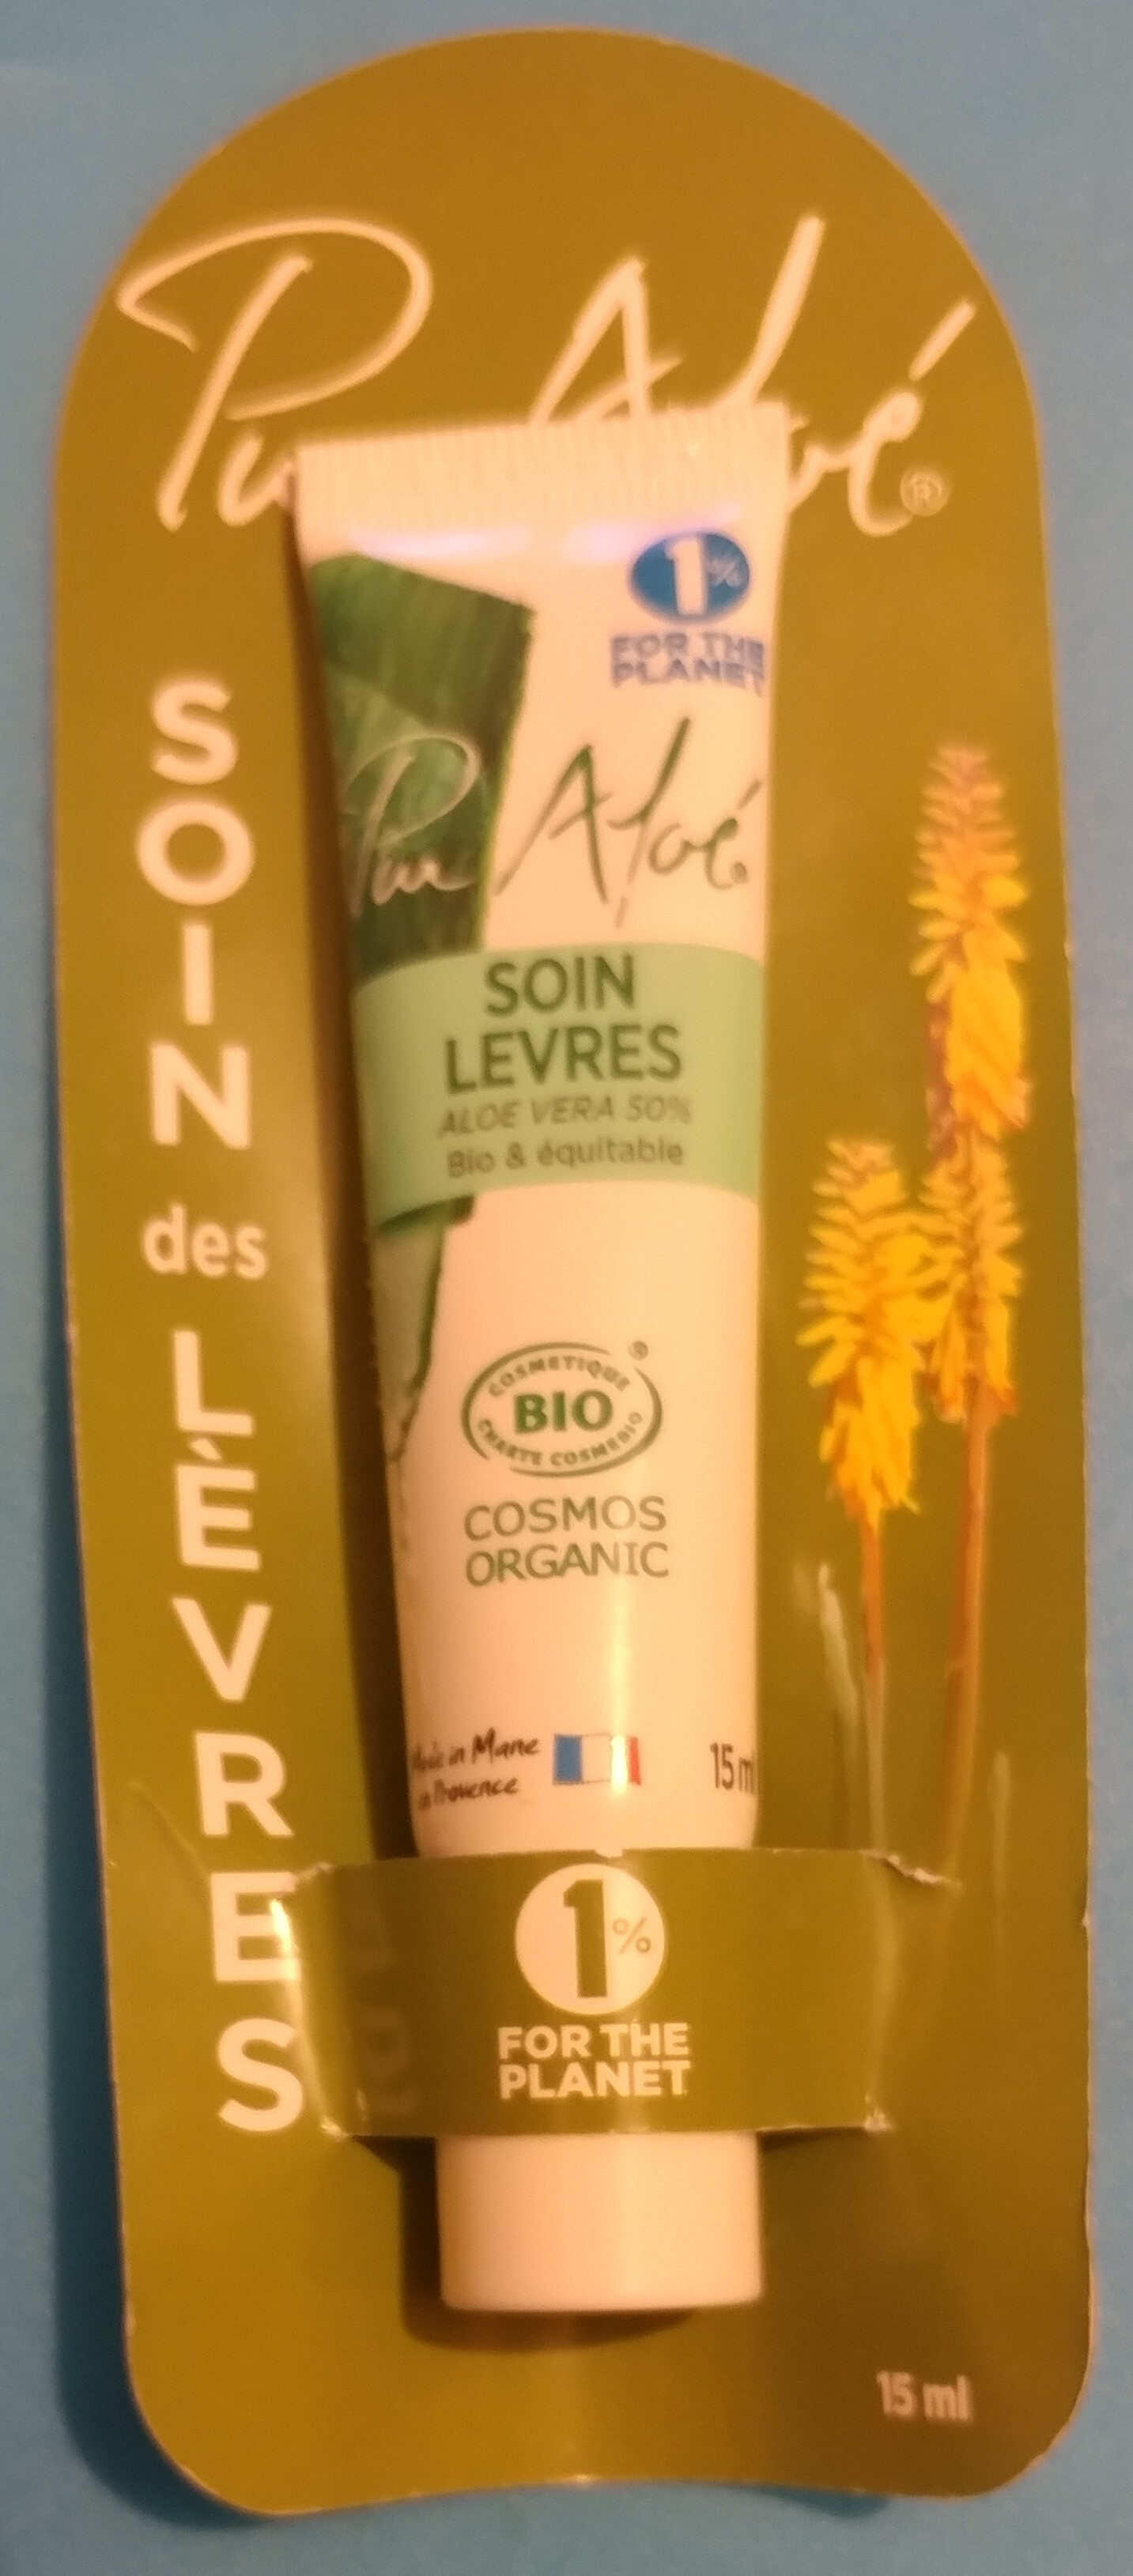 soin lèvres aloé véra 50% bio & équitable - Tuote - fr